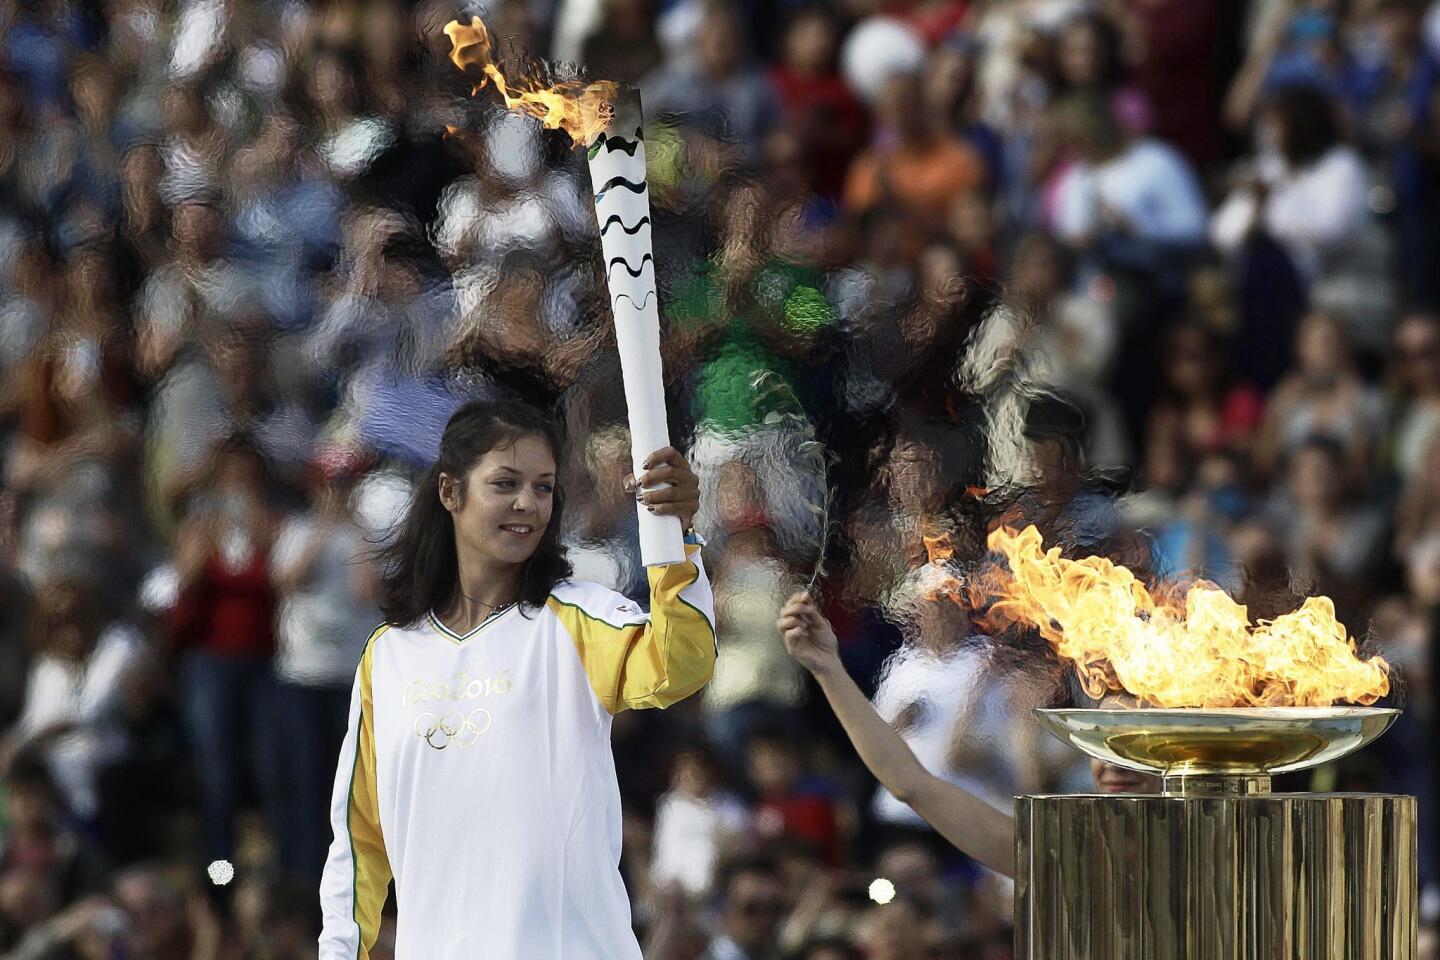 La campeona europa de Aikaterini Nikolaidou enciende la llama olímpica durante la ceremonia de entrega de la antorcha olímpica en el estadio Panathinaiko, sede de los Juegos de Atenas de 1896, en Atenas Grecia. Los Juegos Olímpicos de Rio de Janeiro 2016.